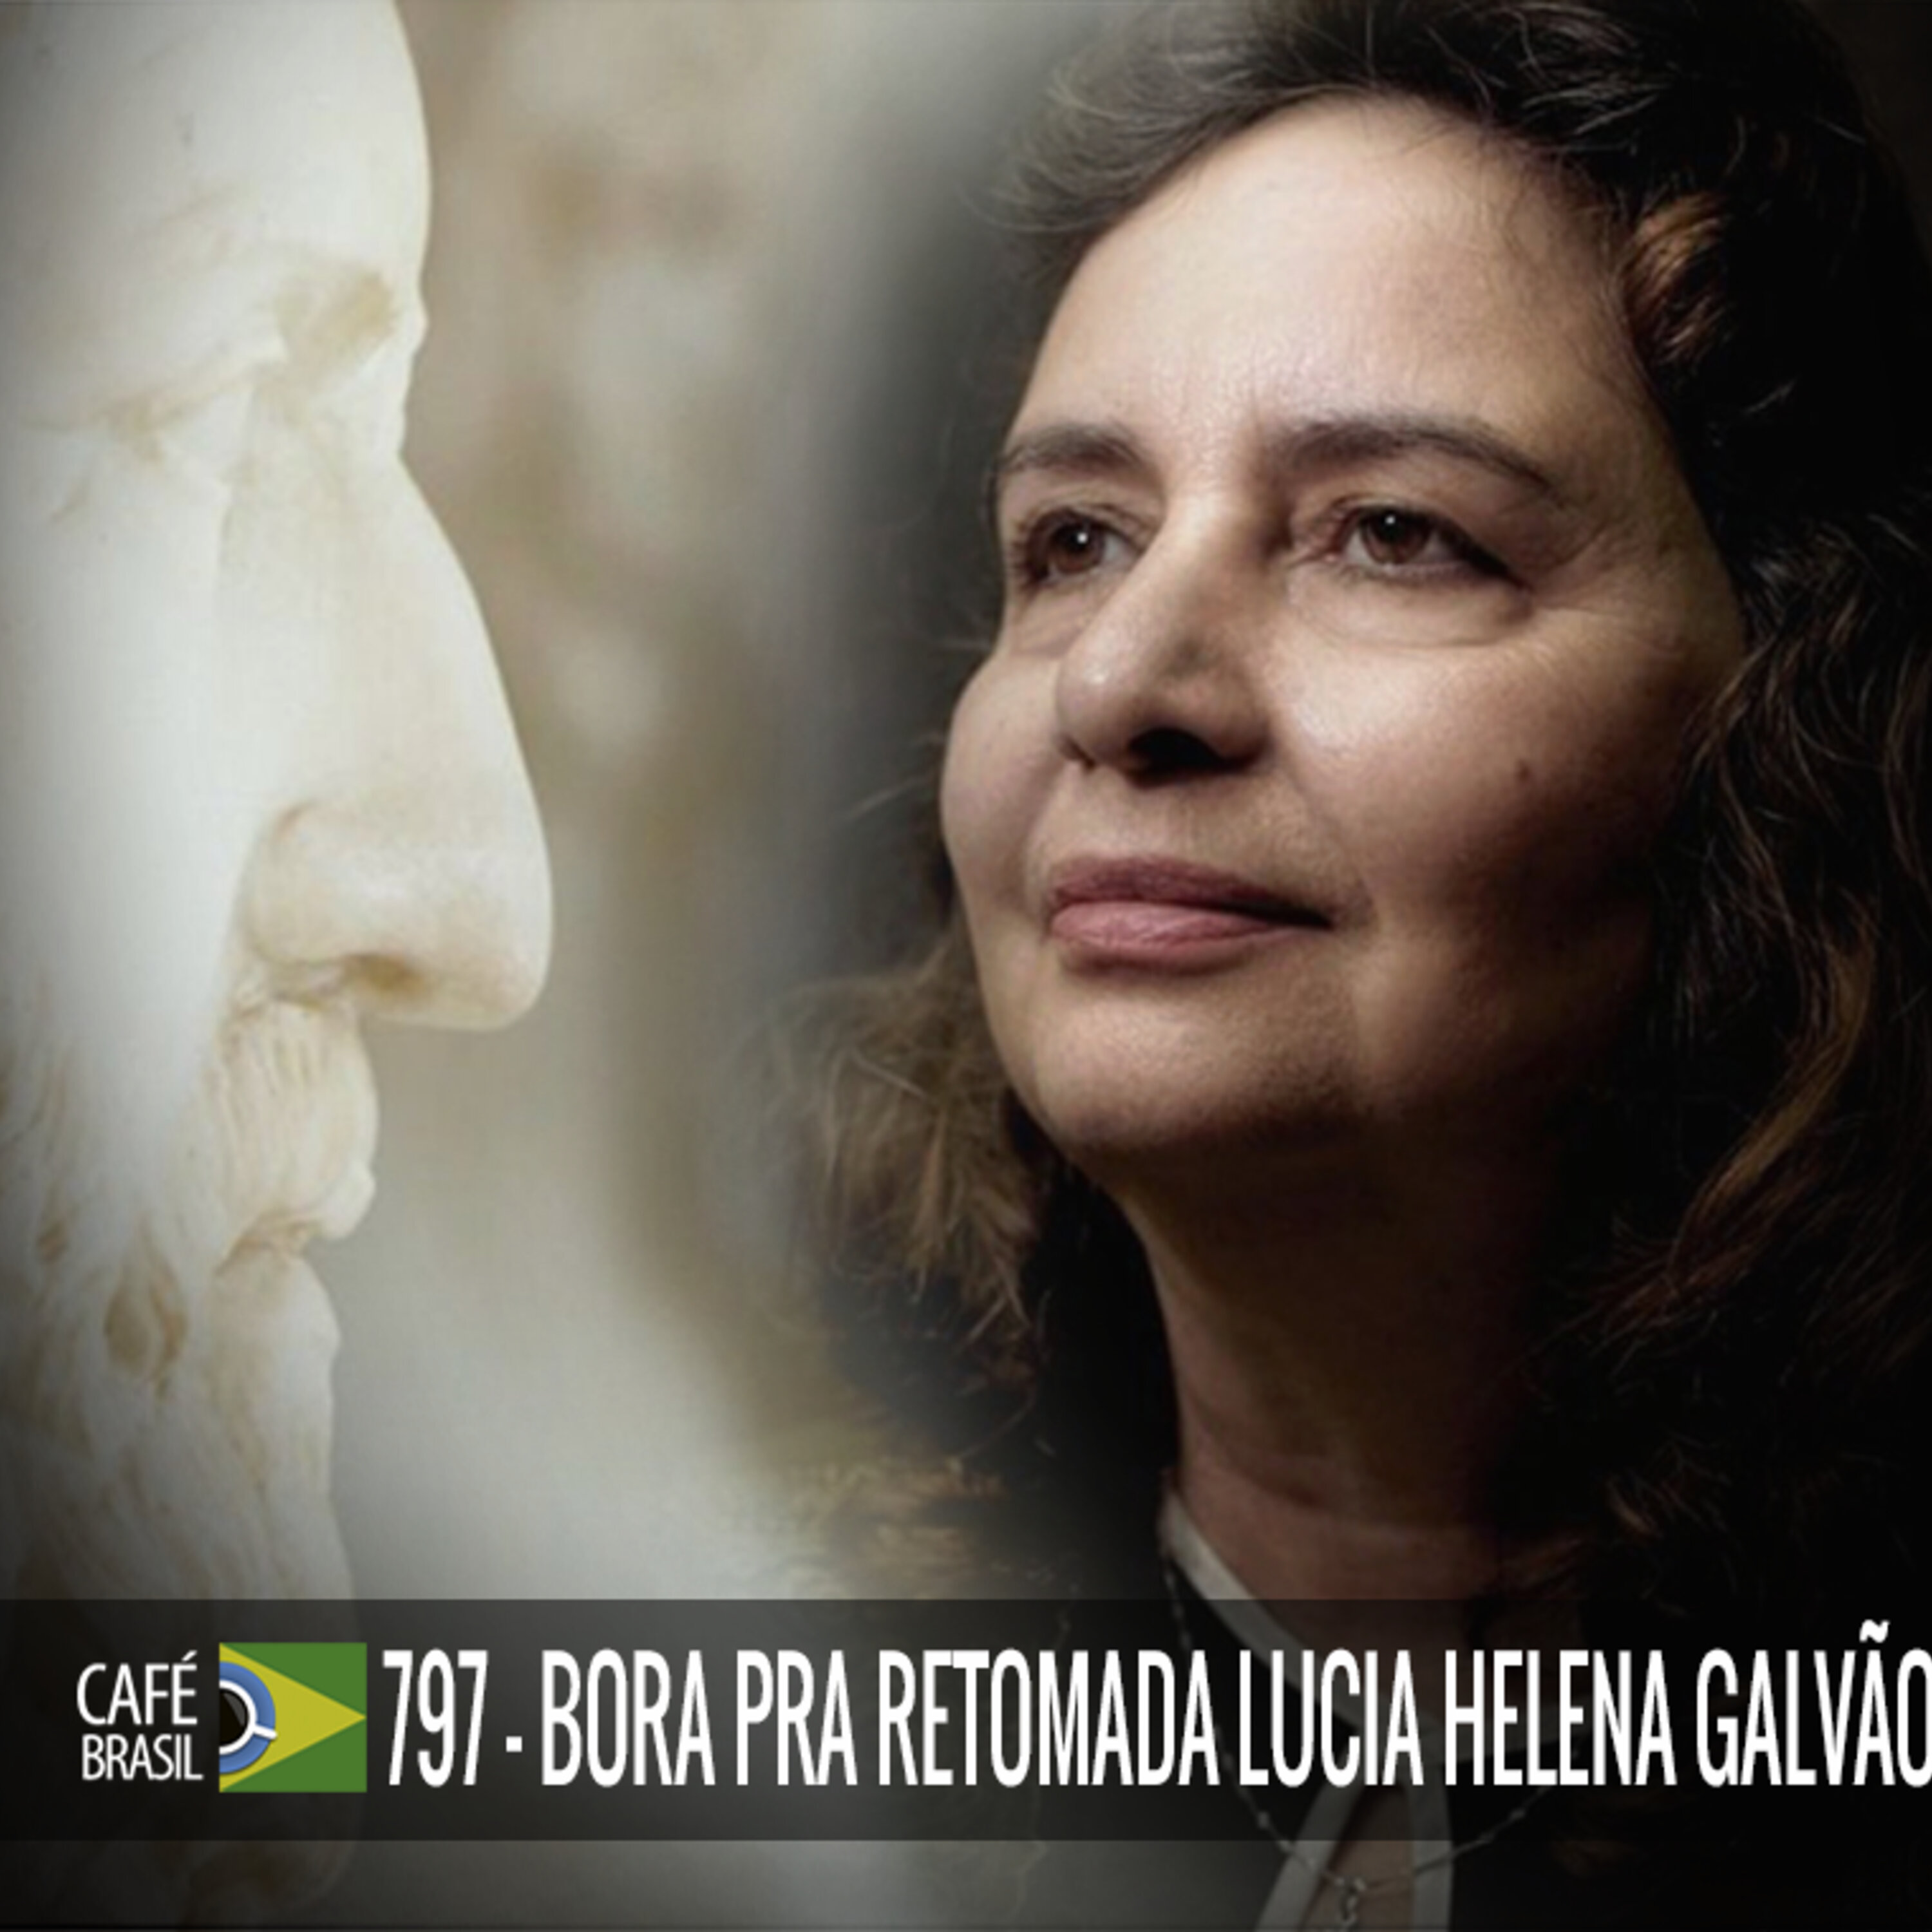 Café Brasil 797 - Bora pra retomada com Lucia Helena Galvao